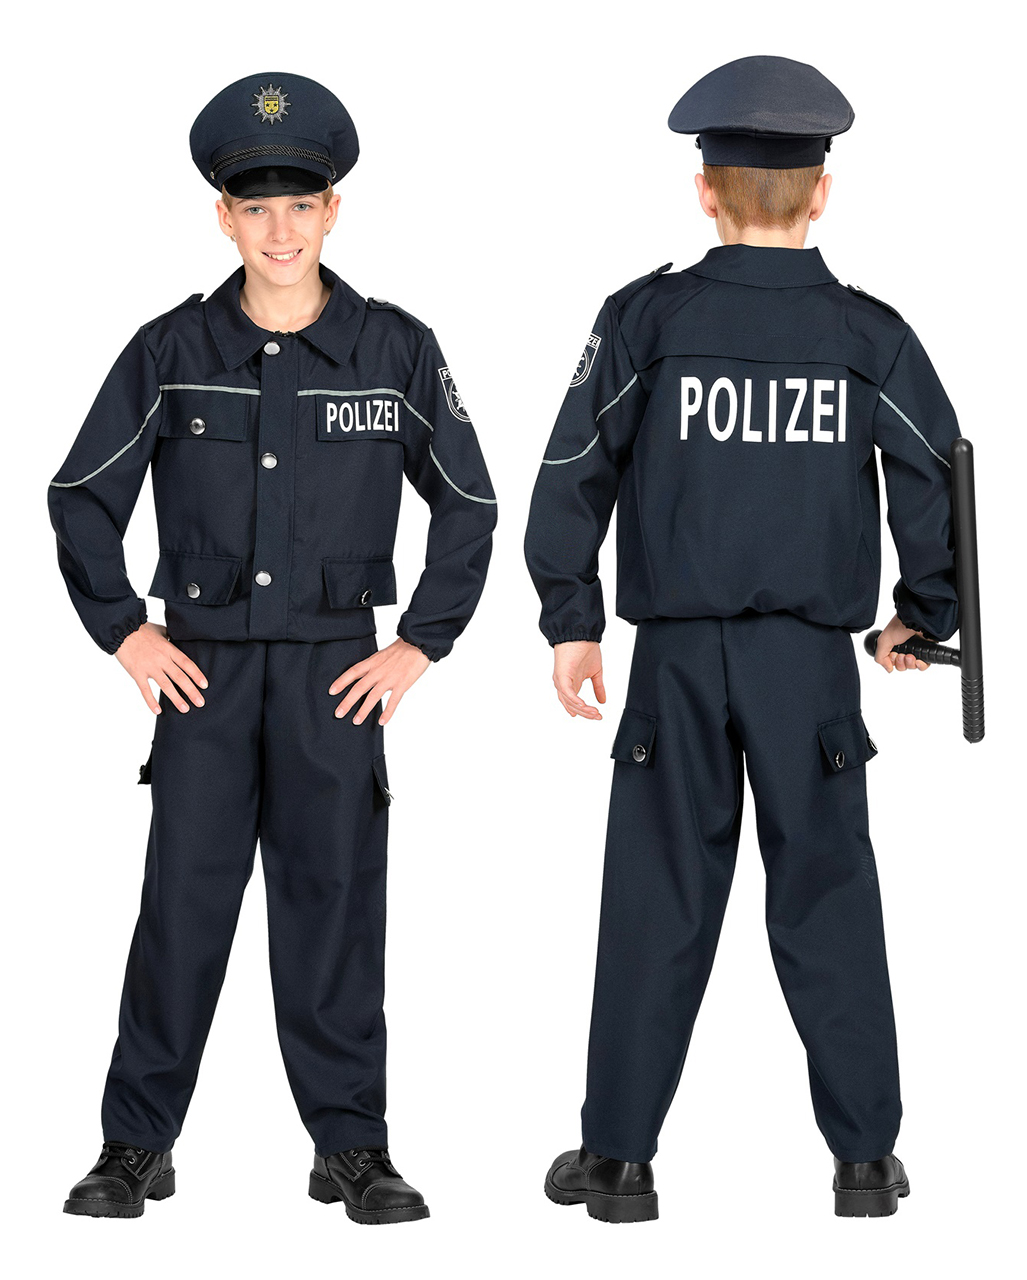 Streifenpolizist Kostüm für Kinder Blau zu Halloween 5-7 Jahre von Horror-Shop.com